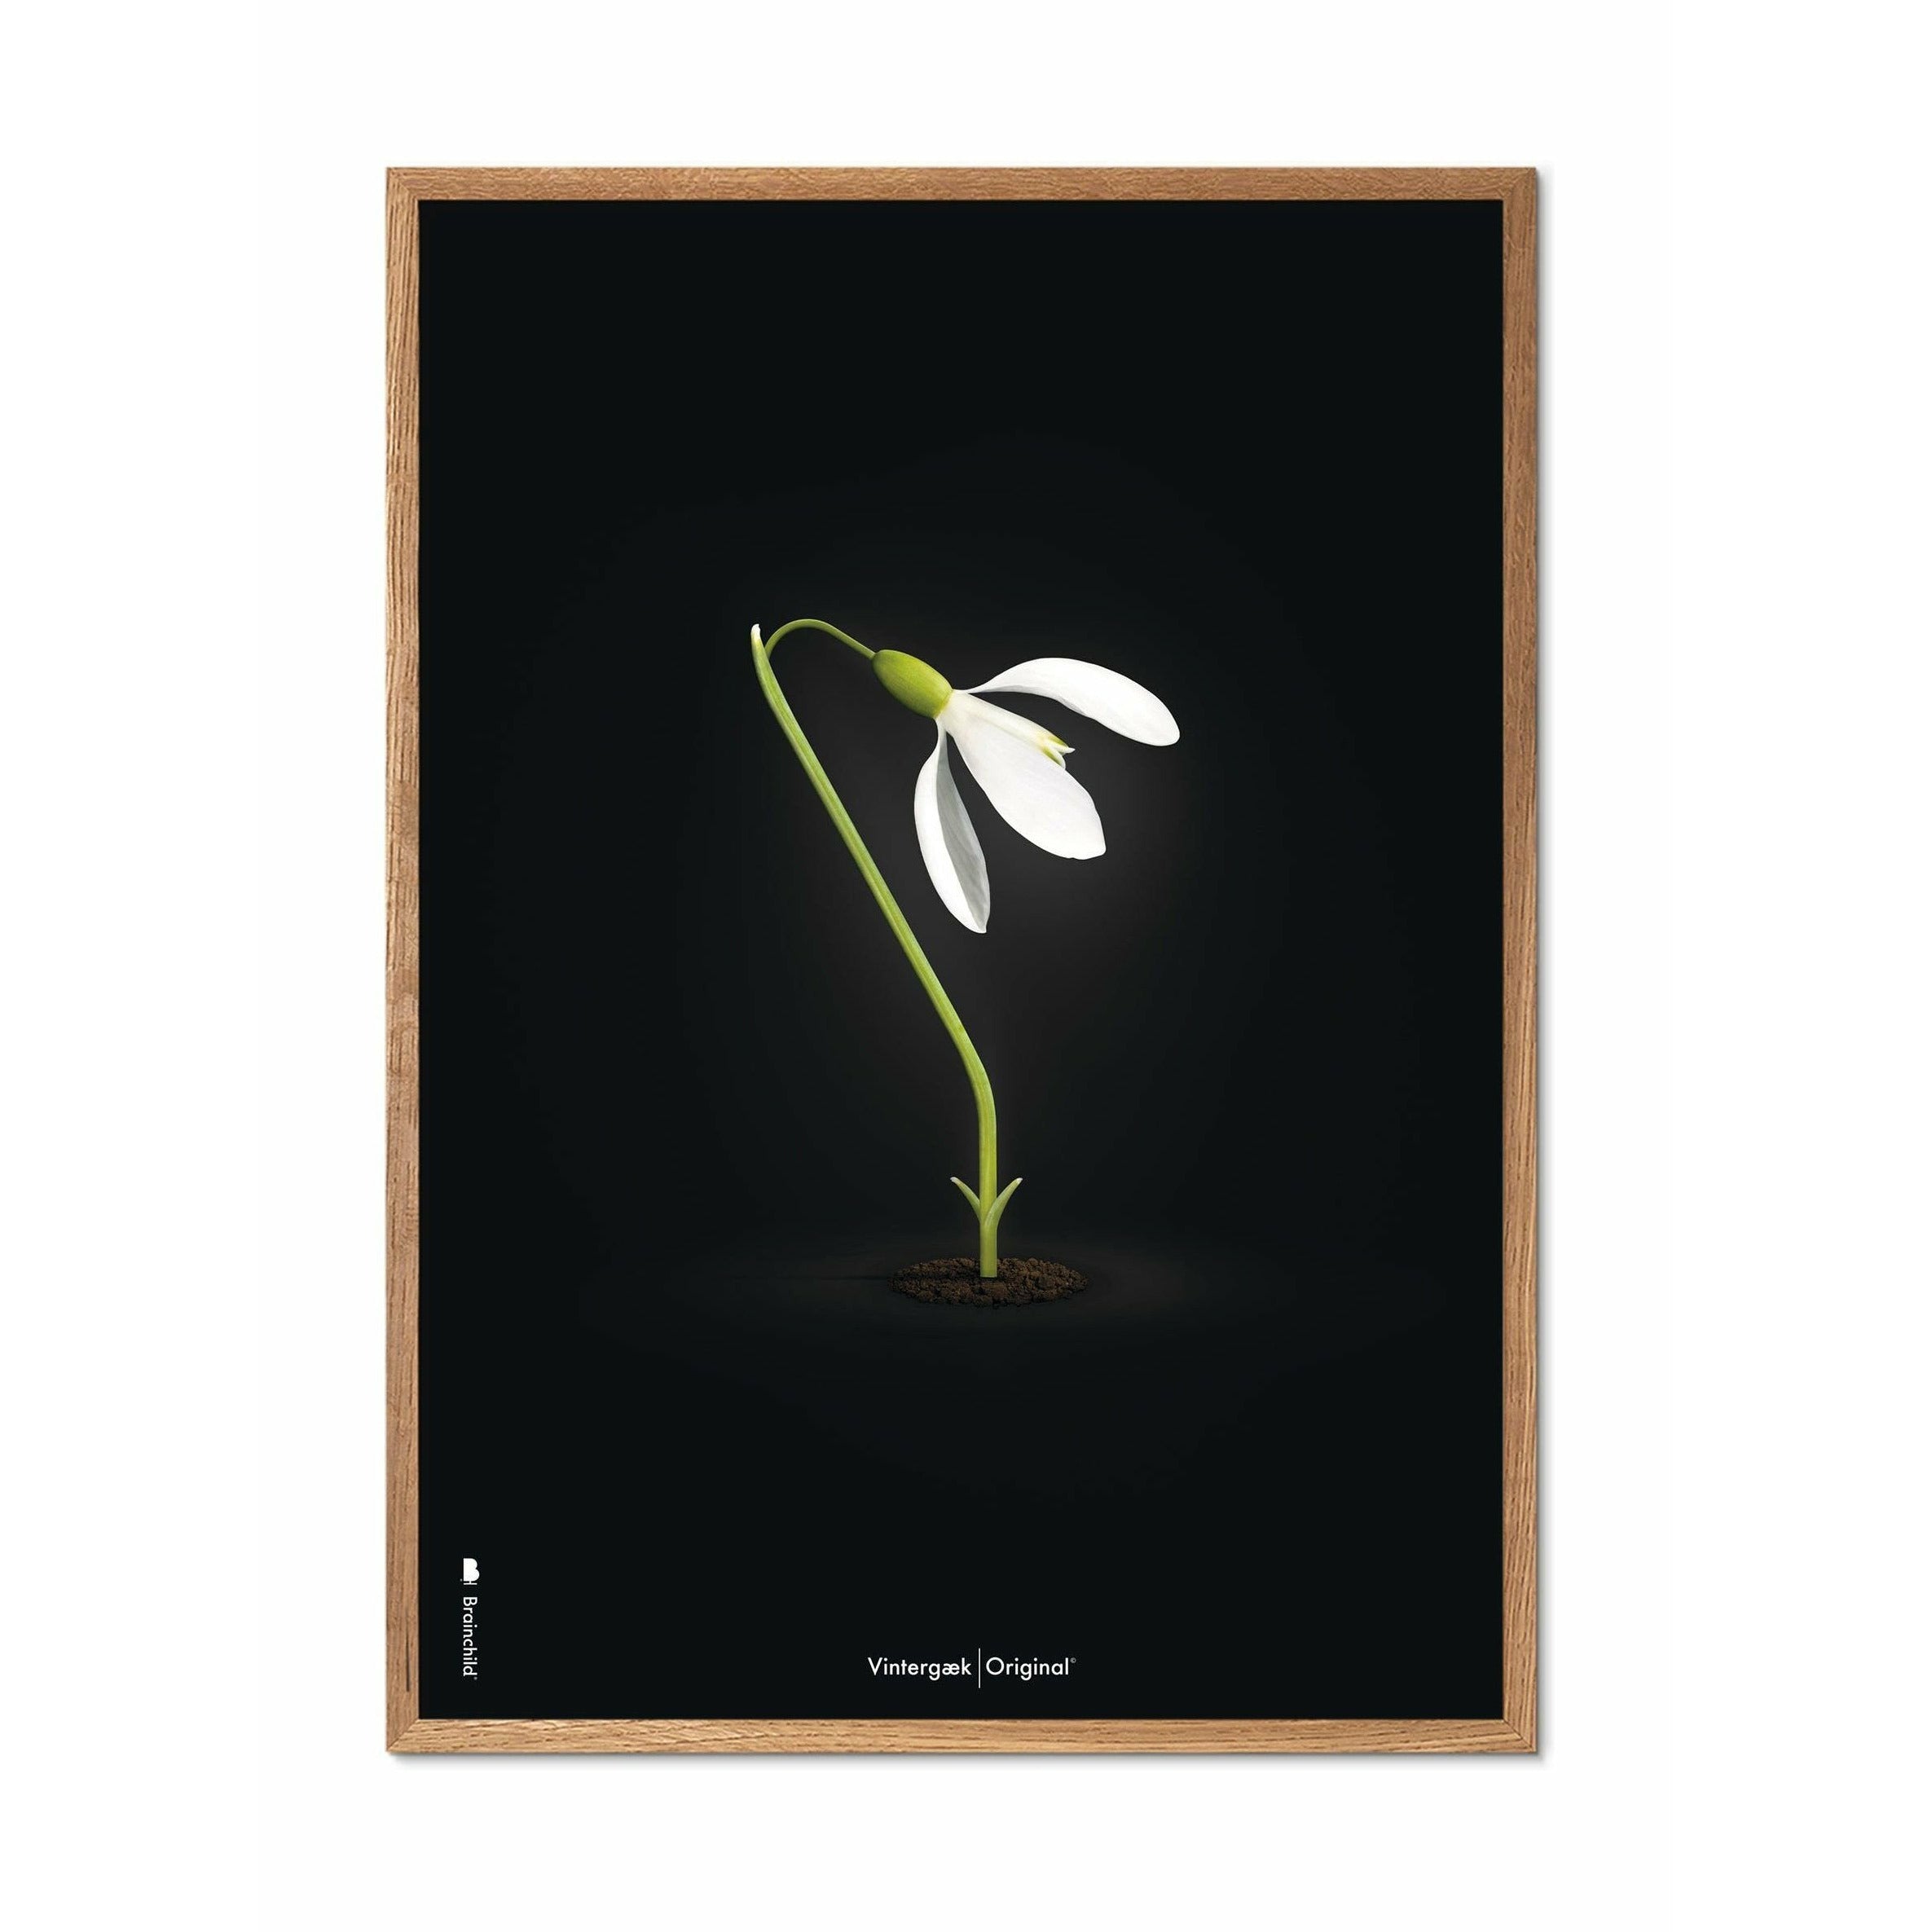 Brainchild Snowdrop Classic Poster, Frame Made of Light Wood A5, svart bakgrunn